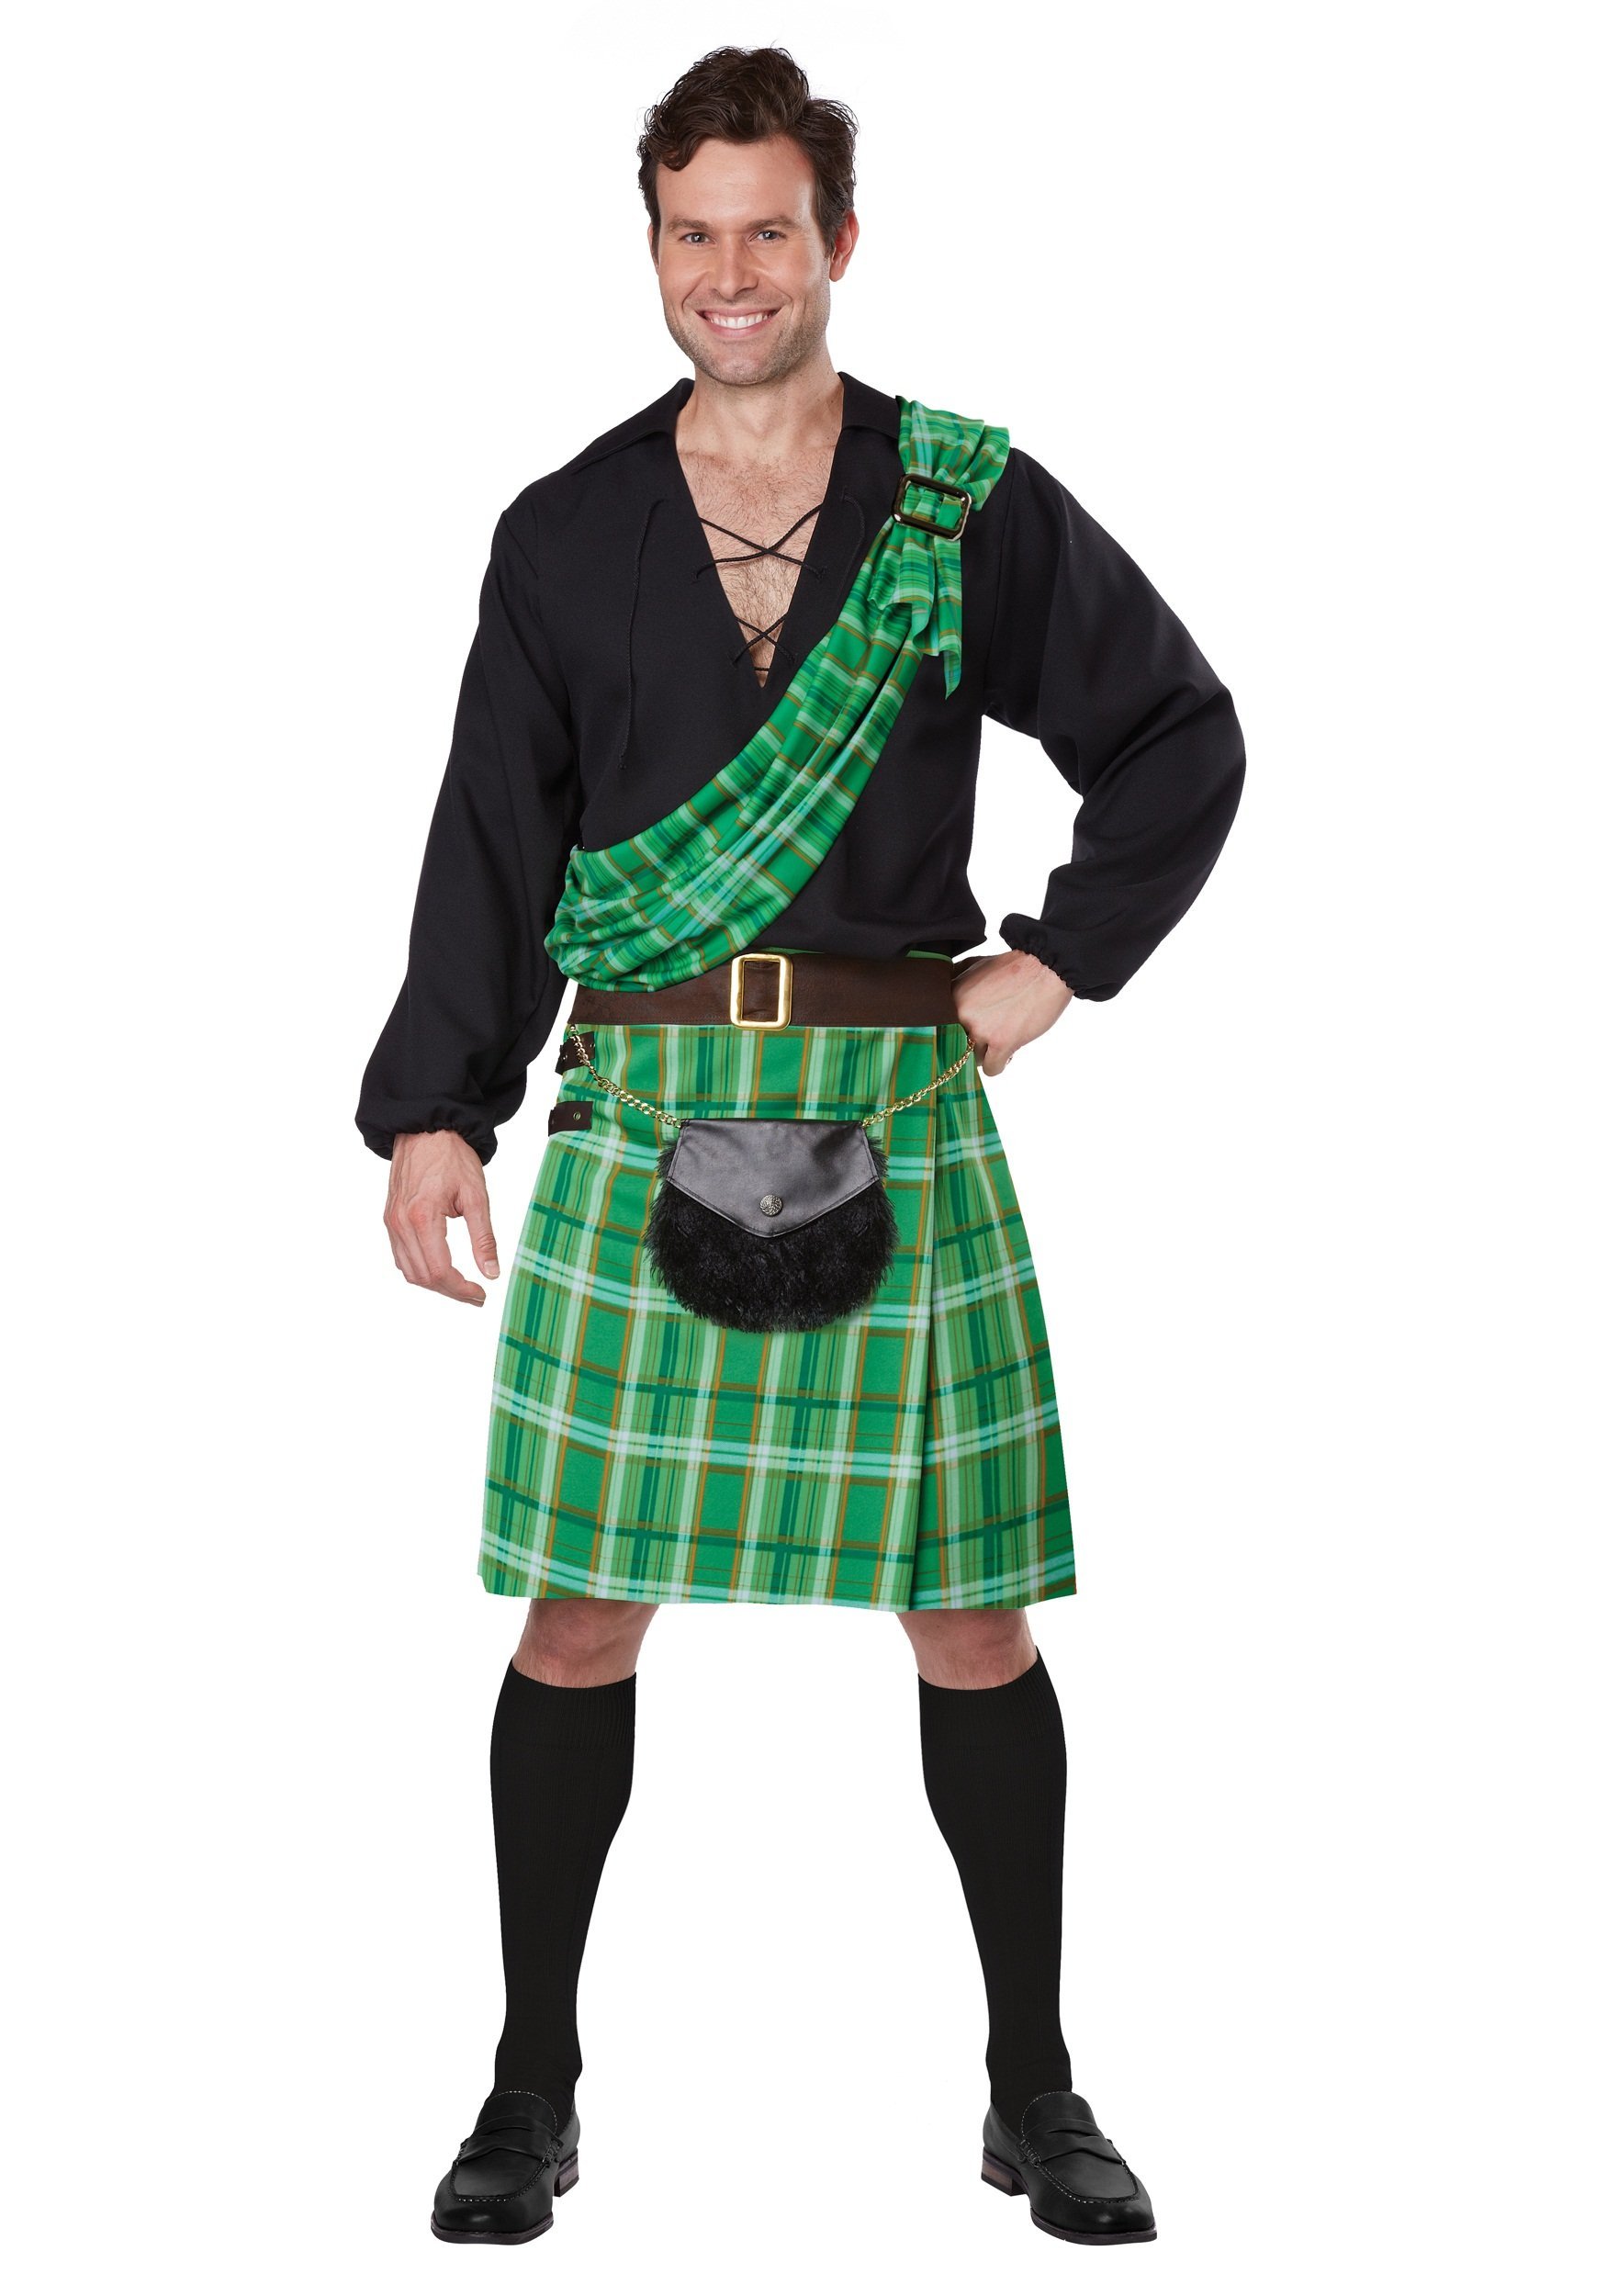 Scottish irish. Национальный костюм Ирландии мужской килт. Шотландия килт. Килт и тартан. Шотландия Национальная одежда мужчин килт.